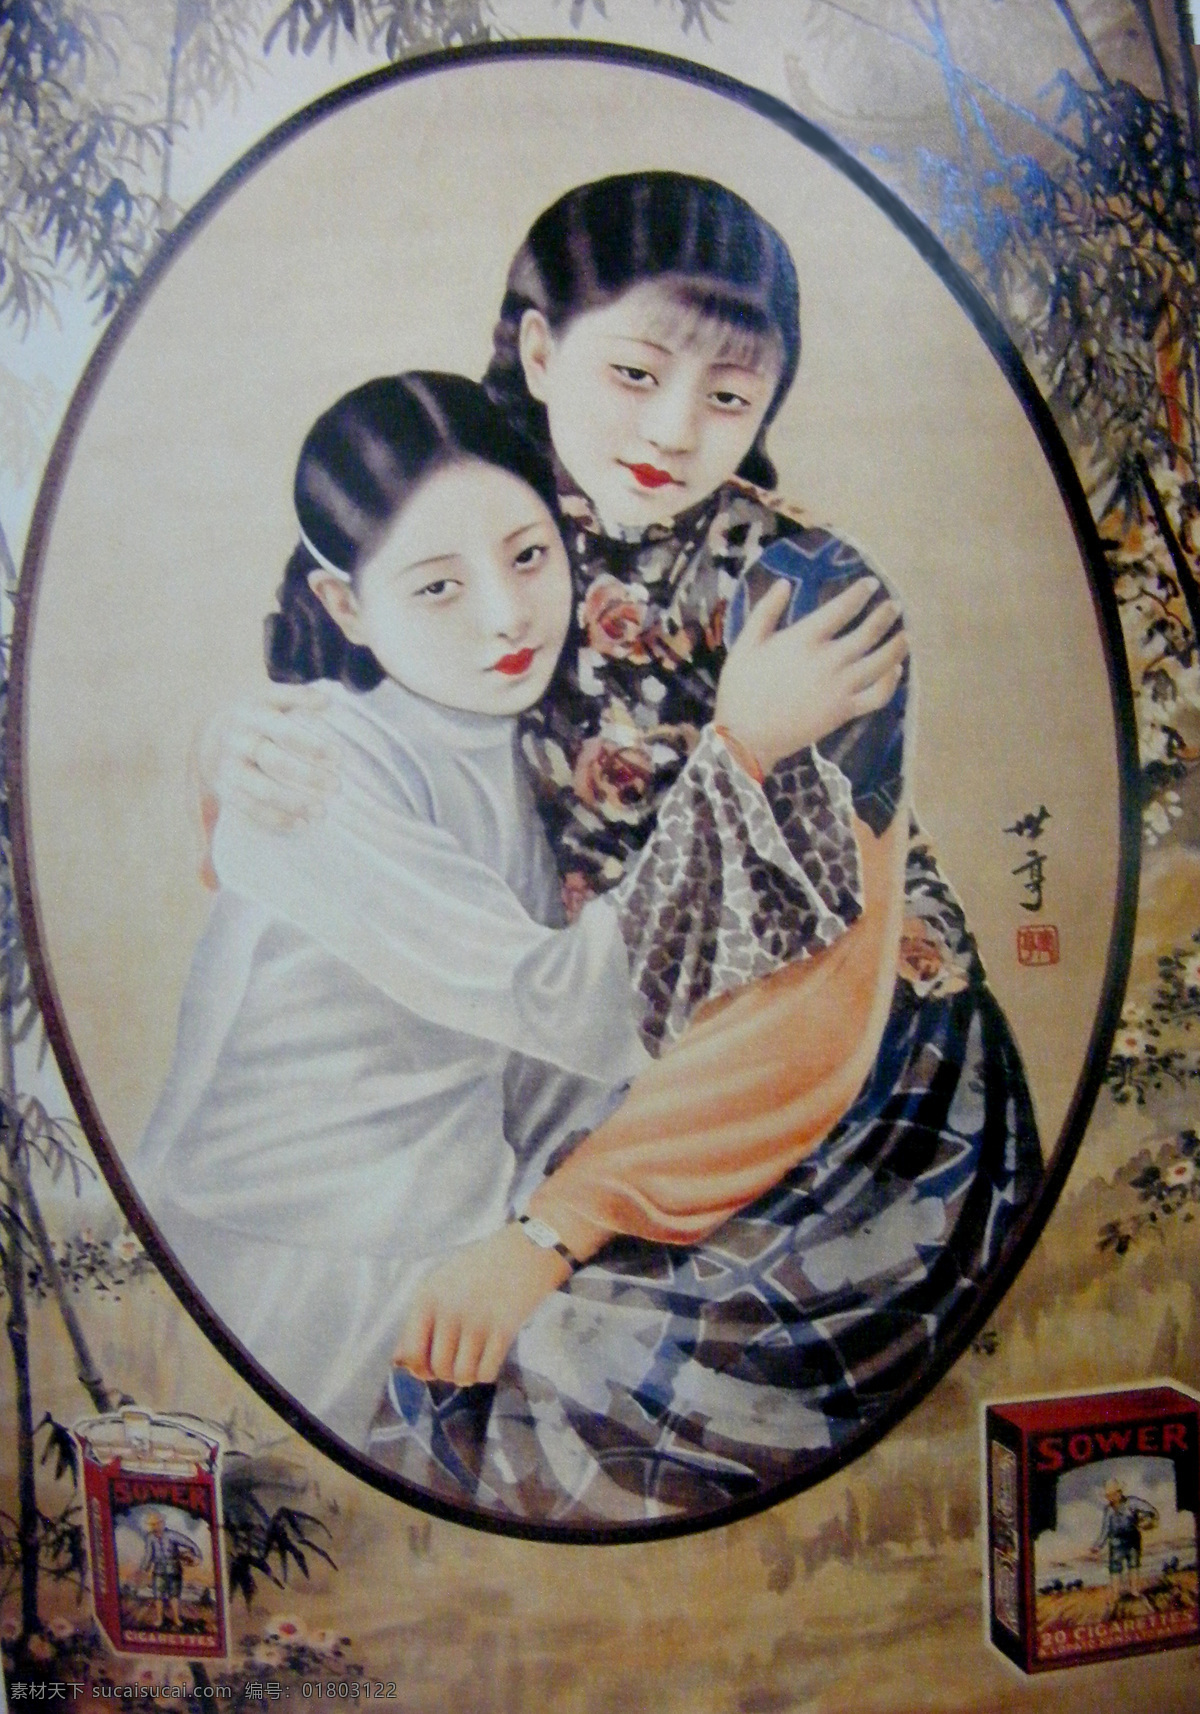 老上海月份牌 老上海 月份牌 广告 旗袍 旗袍美女 美女 姐妹花 民国 文化艺术 传统文化 摄影图库